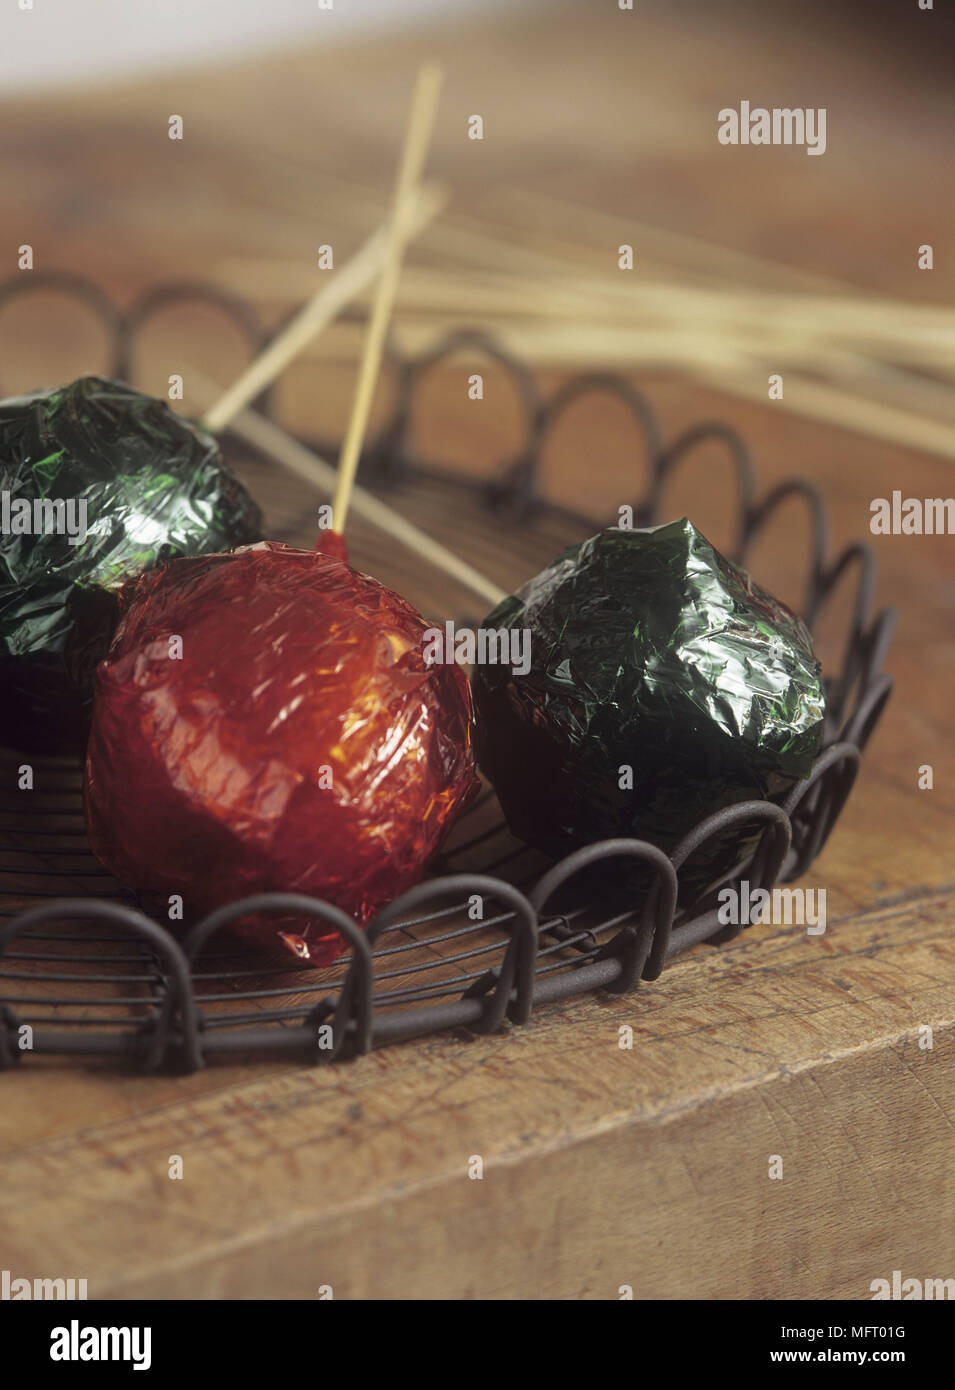 Tres manzanas de caramelo envuelto en celofán rojo y verde en una bandeja en el viejo banco de madera arriba Foto de stock